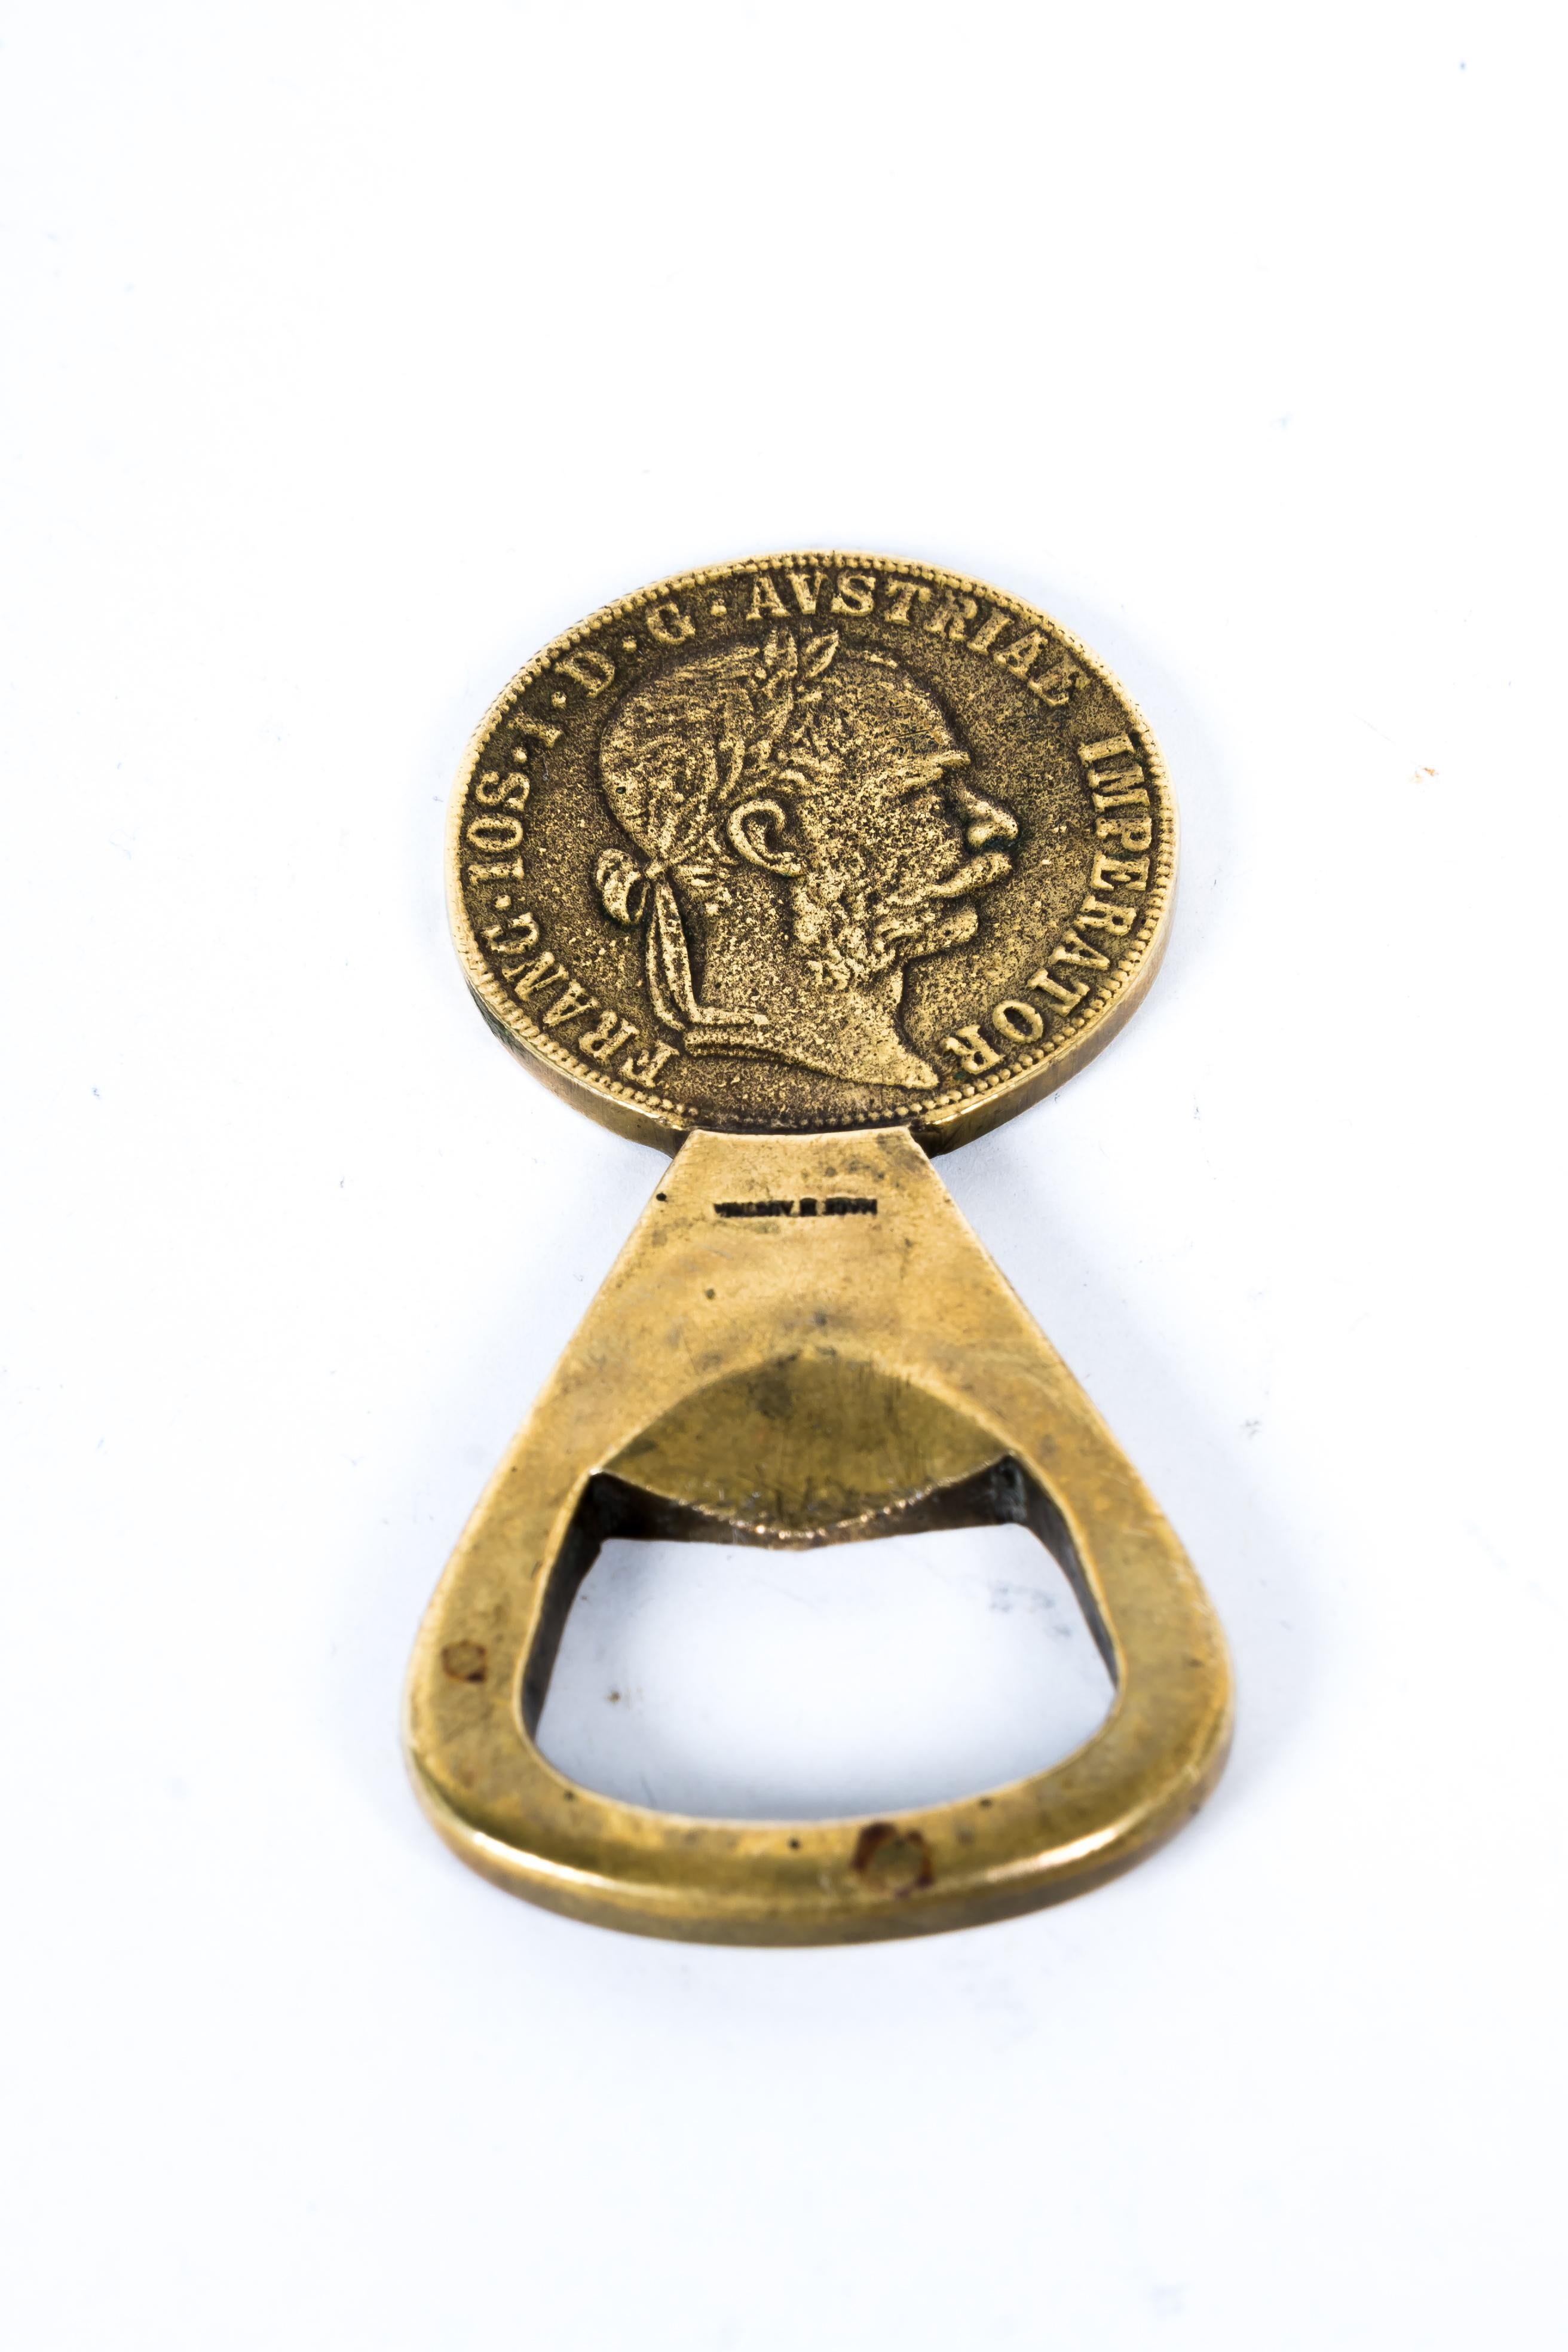 Auböck brass coin bottle opener, around 1950s, Austria
Oroginal condition.